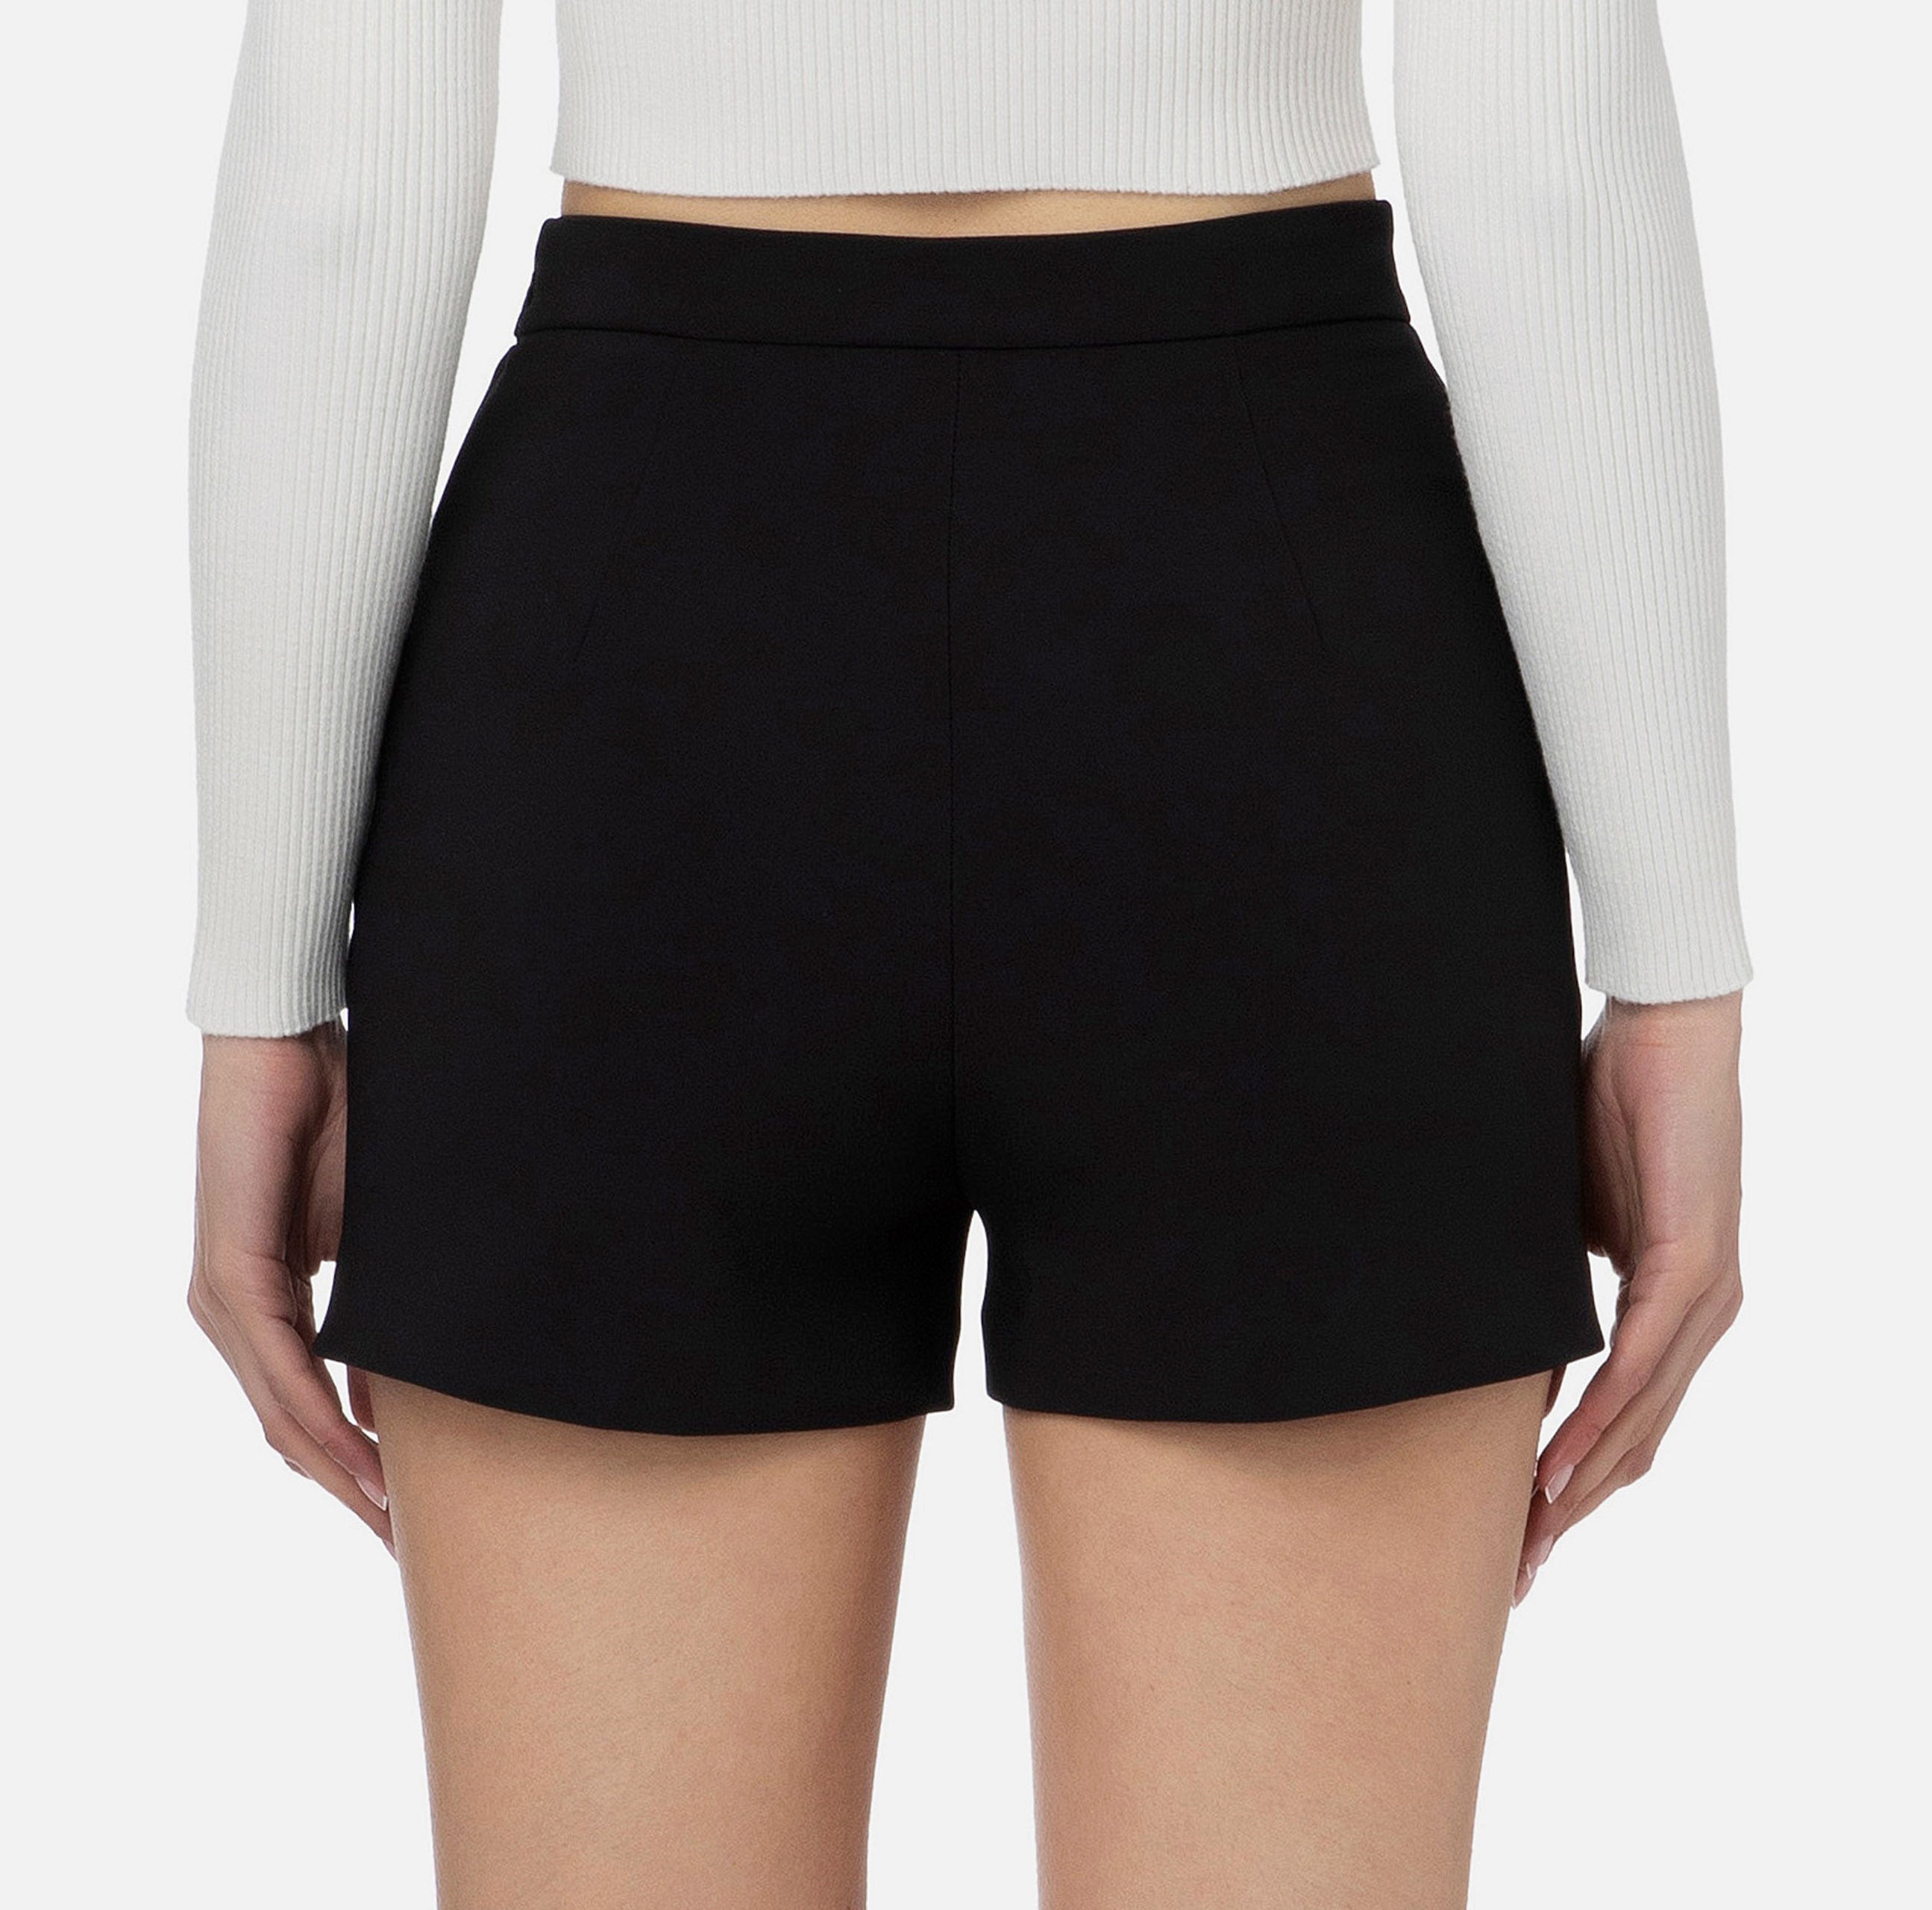 Elisabetta Franchi Women's Shorts SH00236E2 Black